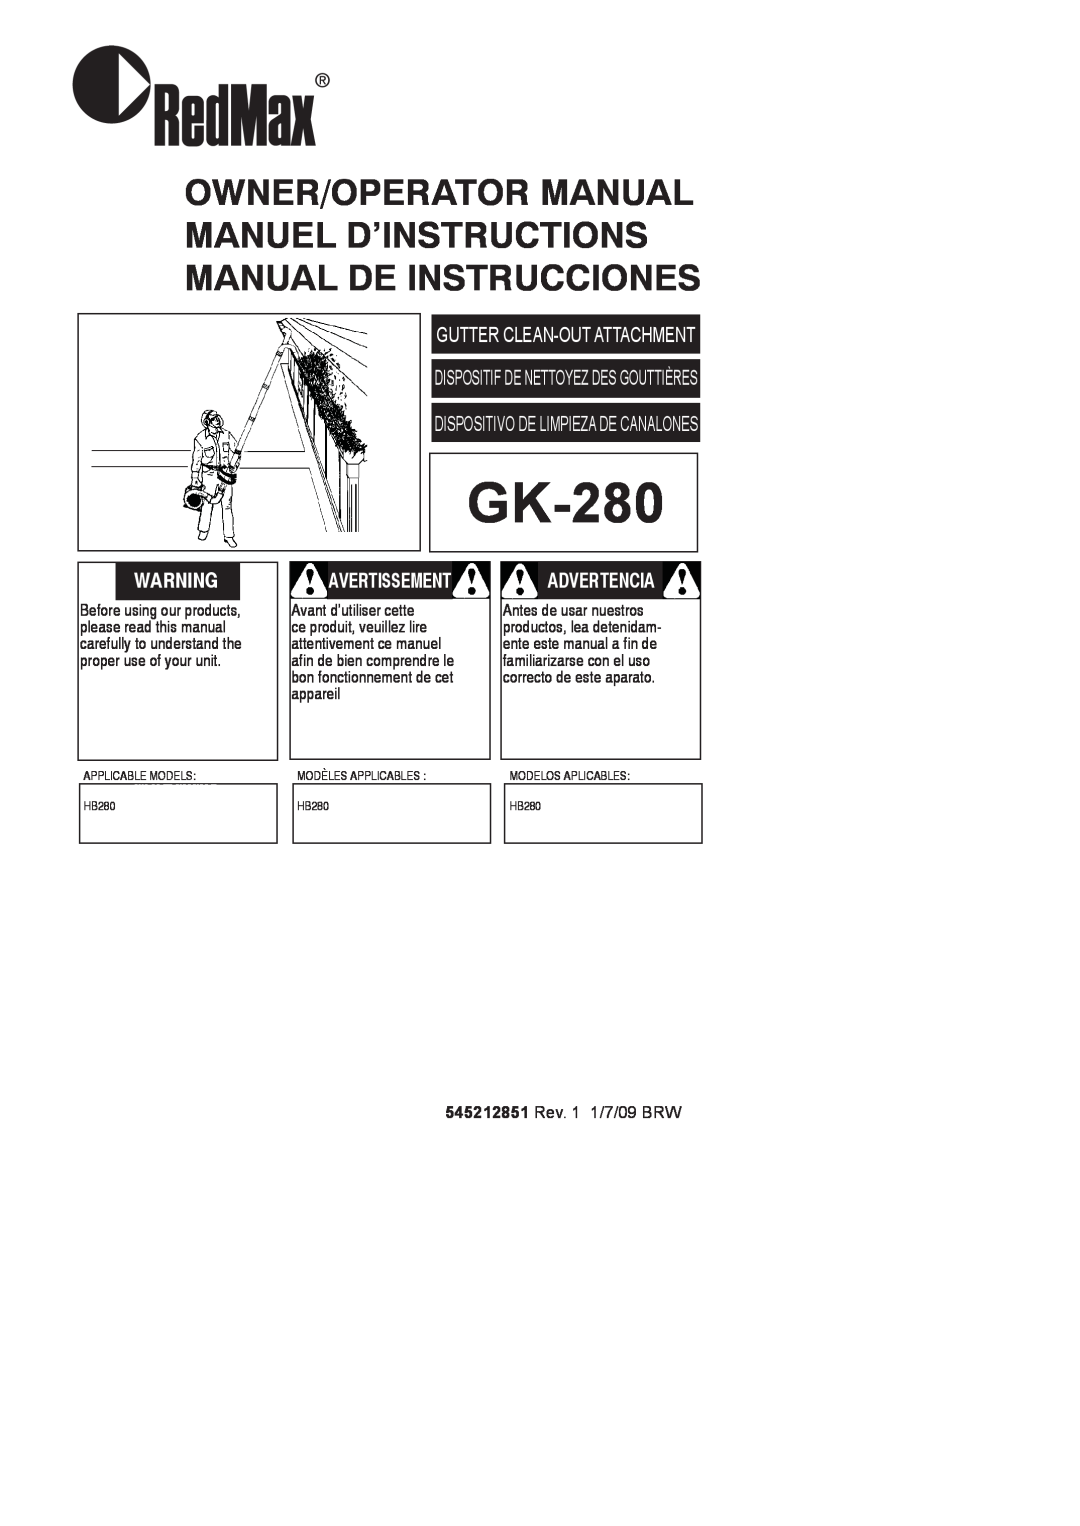 RedMax GK-280 manual Owner/Operator Manual Manuel D’Instructions Manual De Instrucciones, Avertissement, Advertencia 